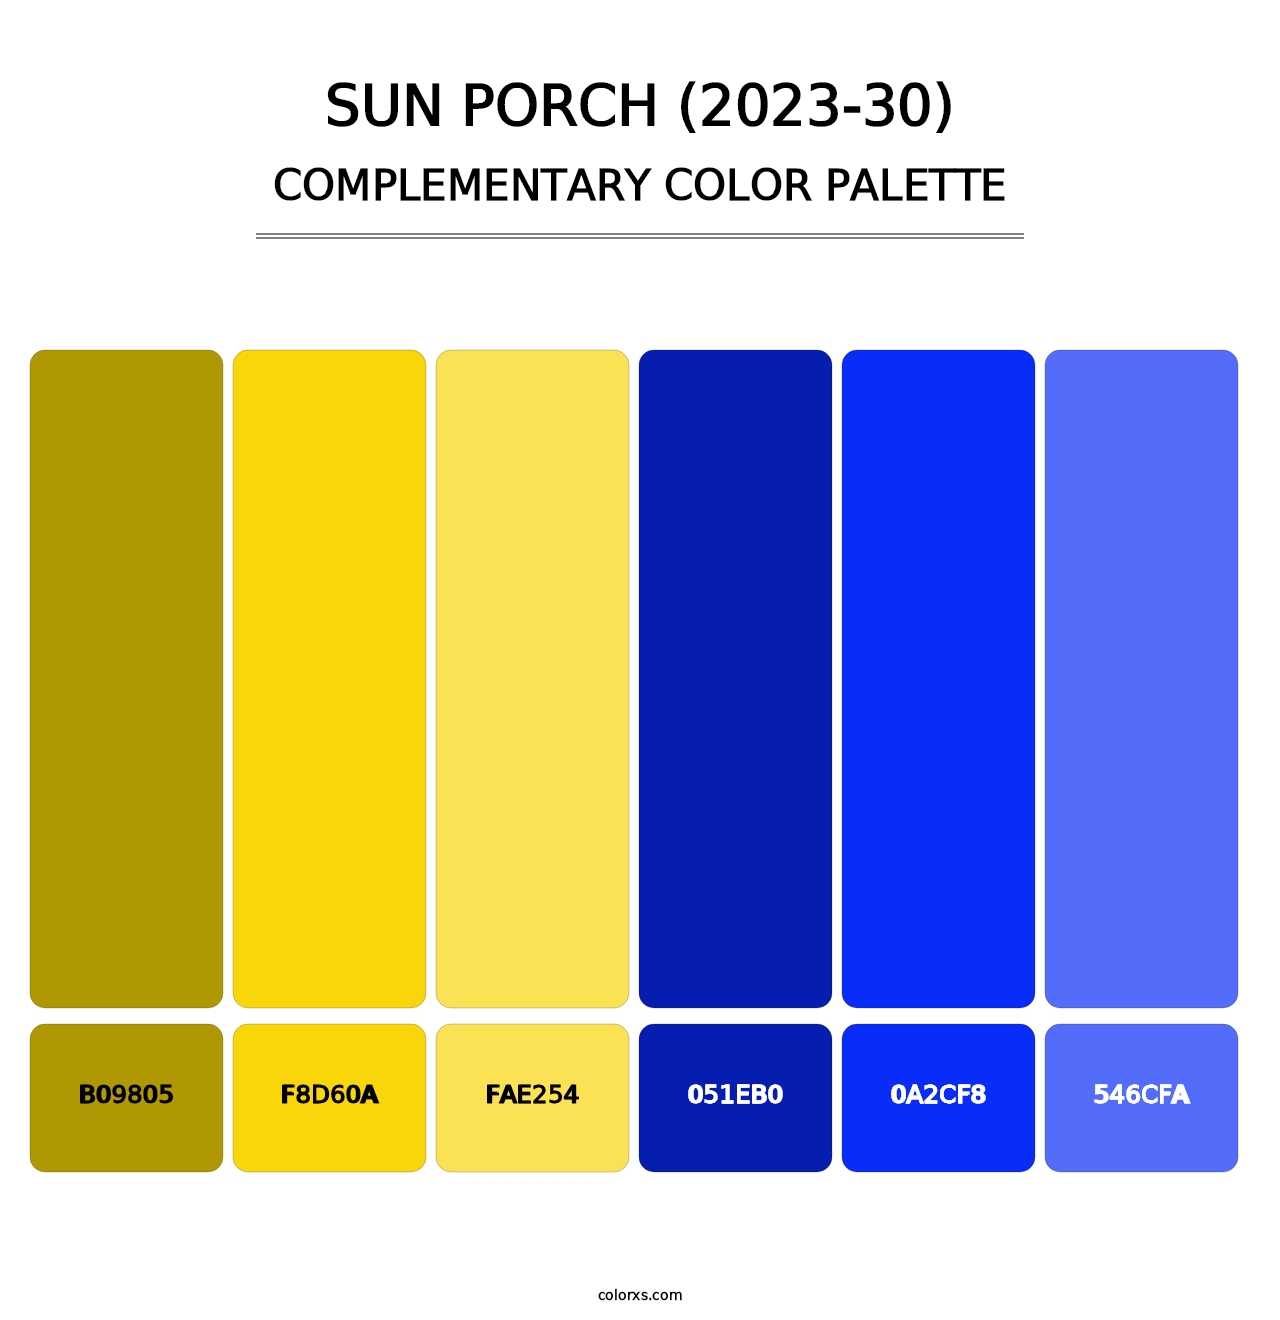 Sun Porch (2023-30) - Complementary Color Palette